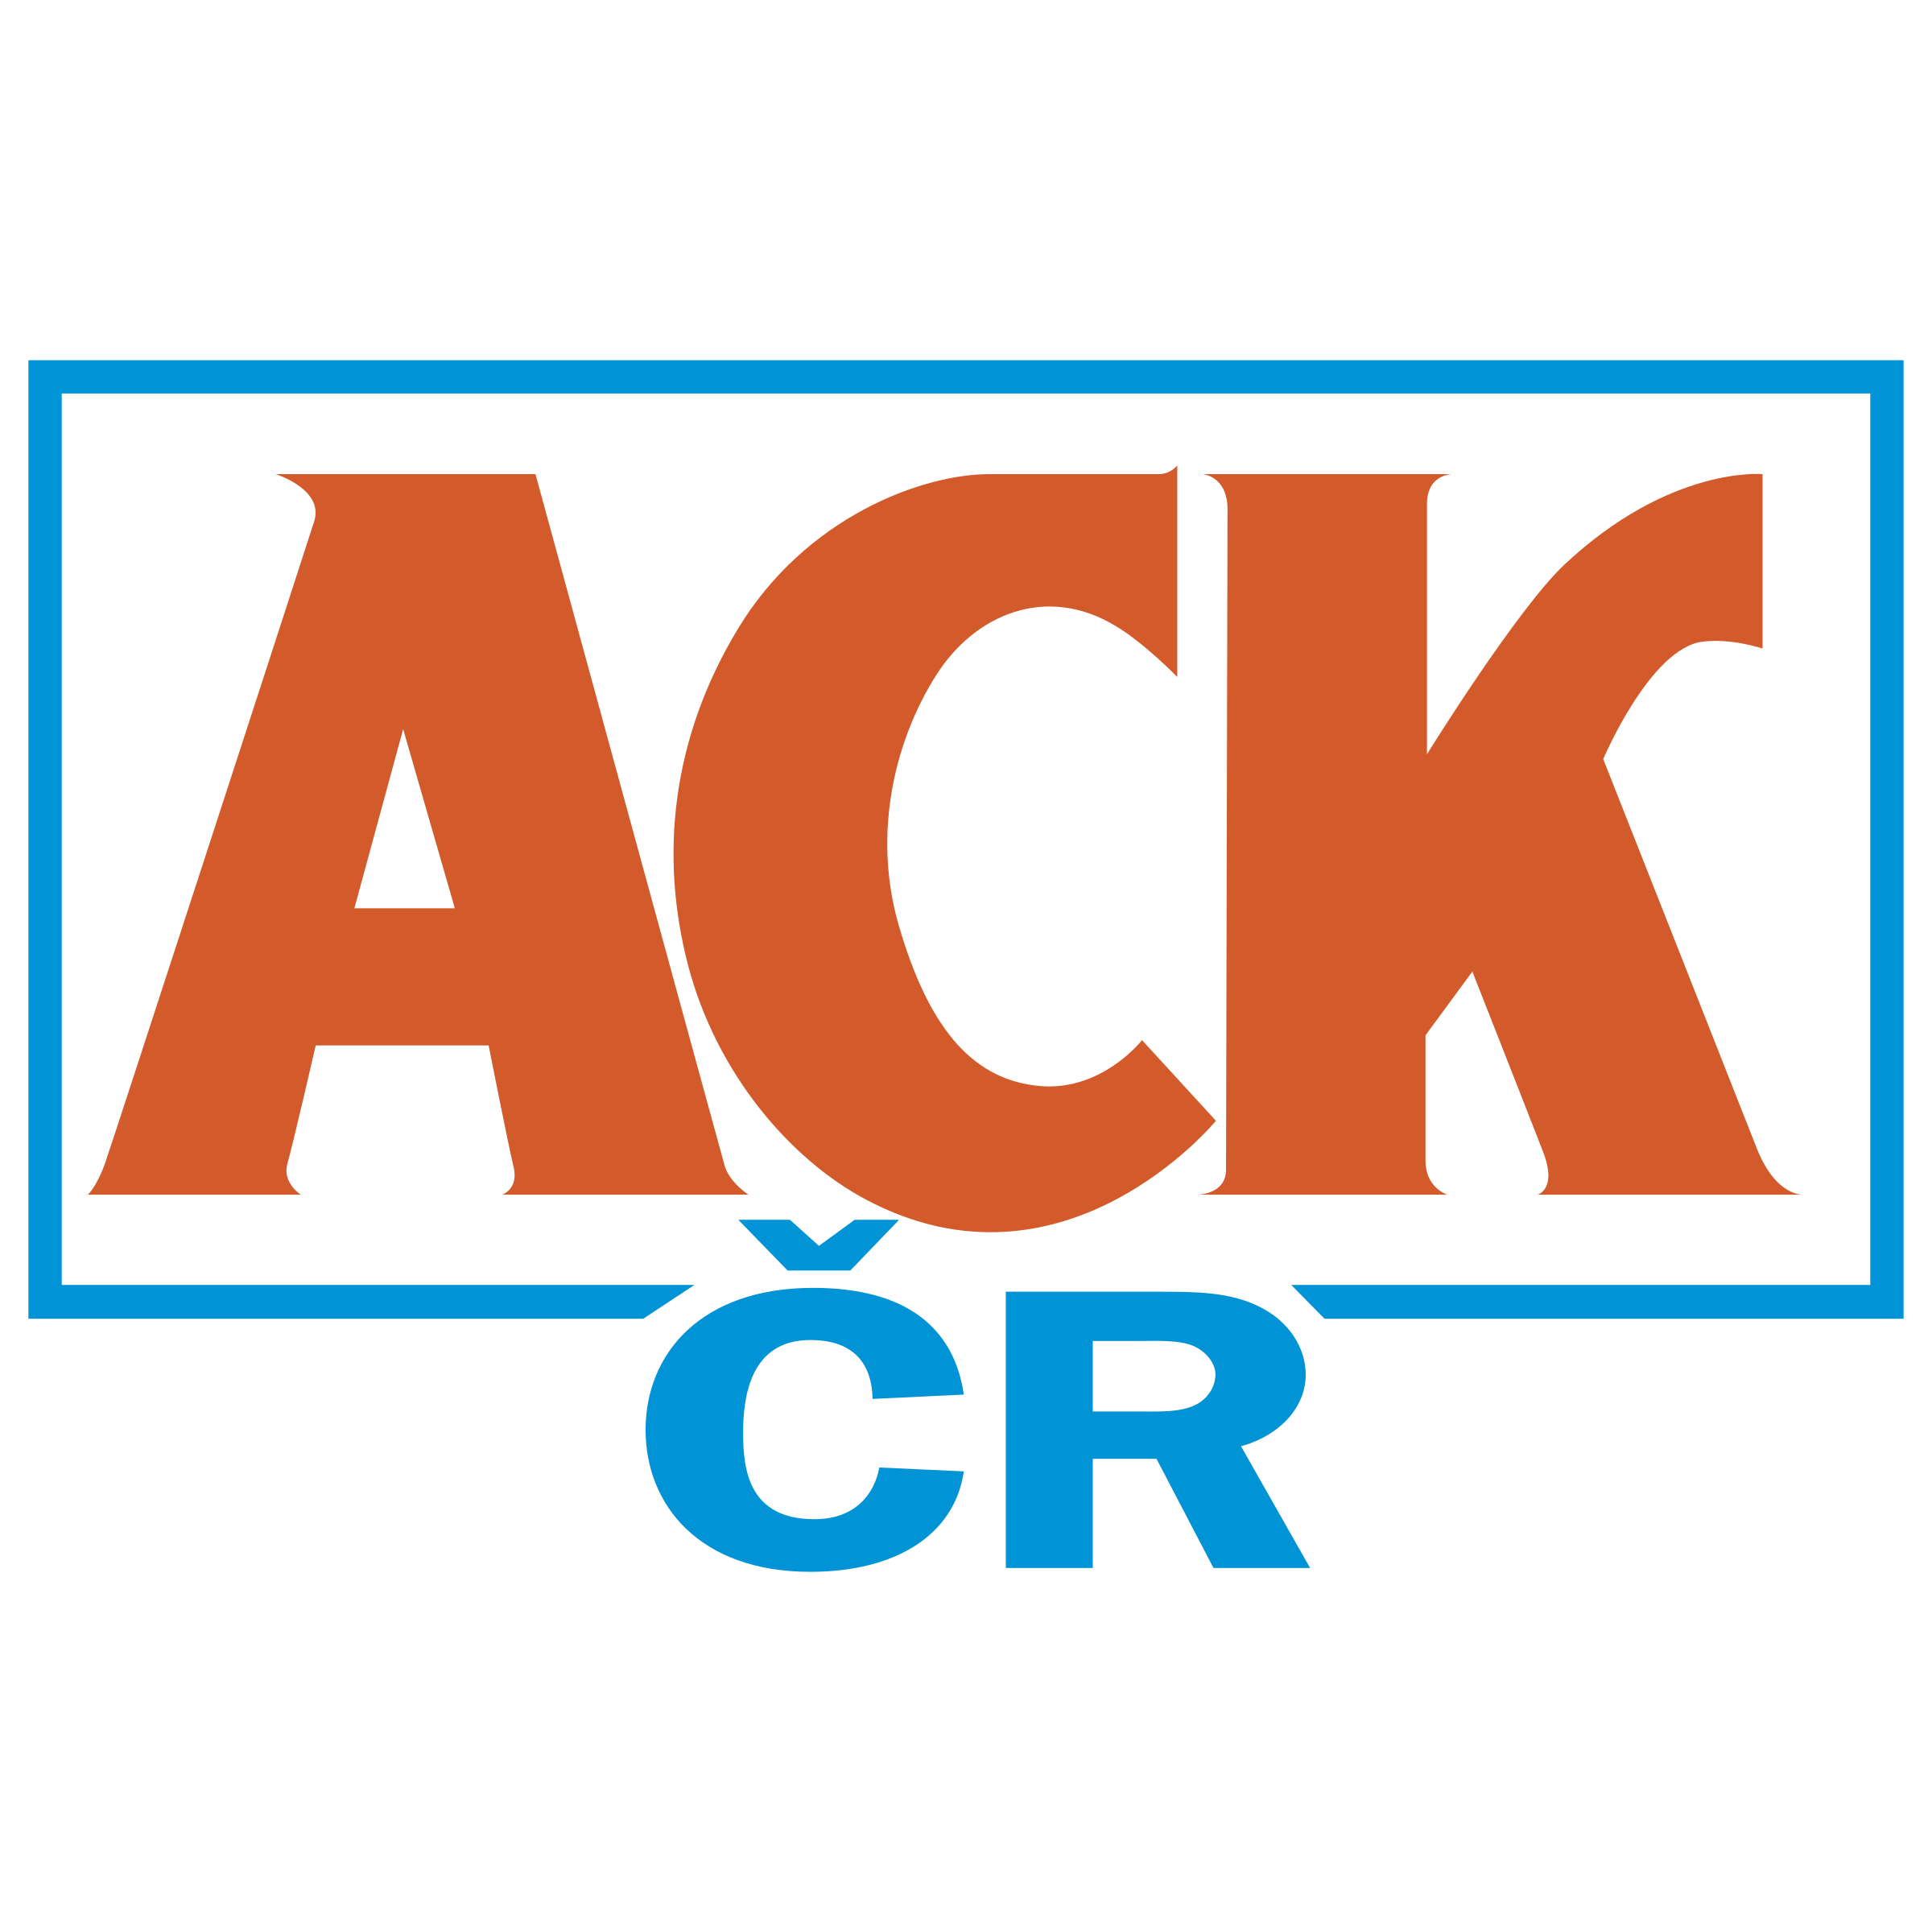 Ack Logo - ACK 01 Logo PNG Transparent & SVG Vector